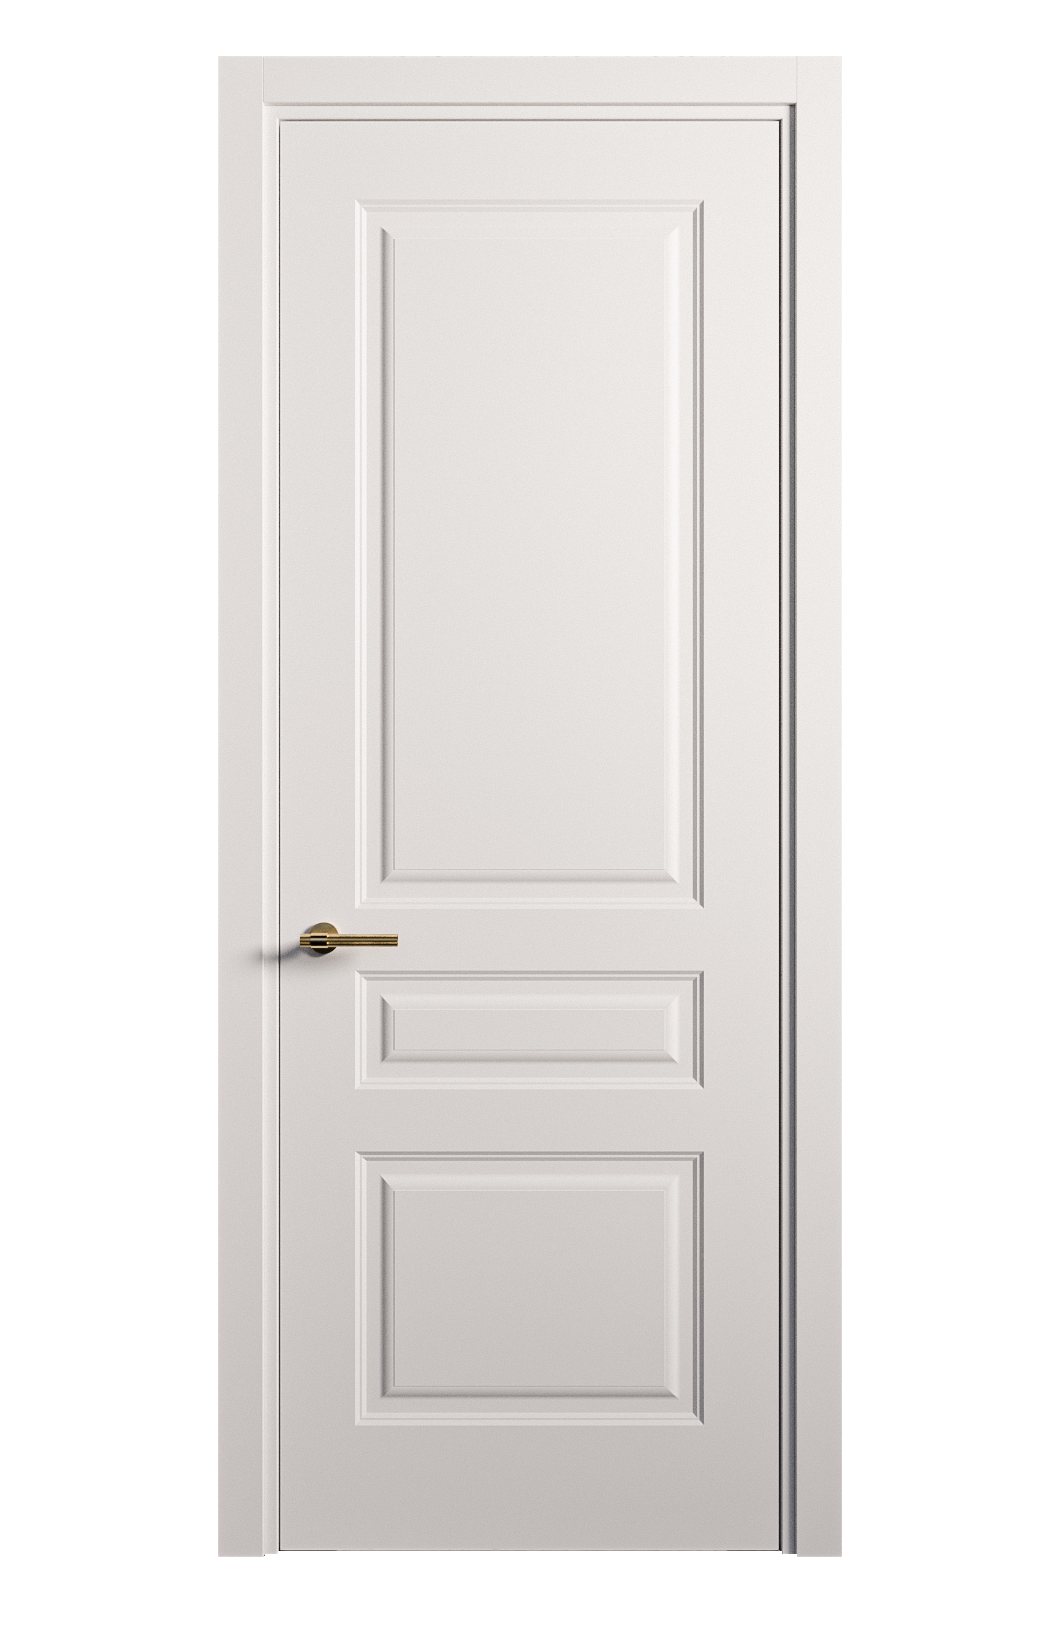 Межкомнатная дверь Вита-2 глухая эмаль ral 9003 26338